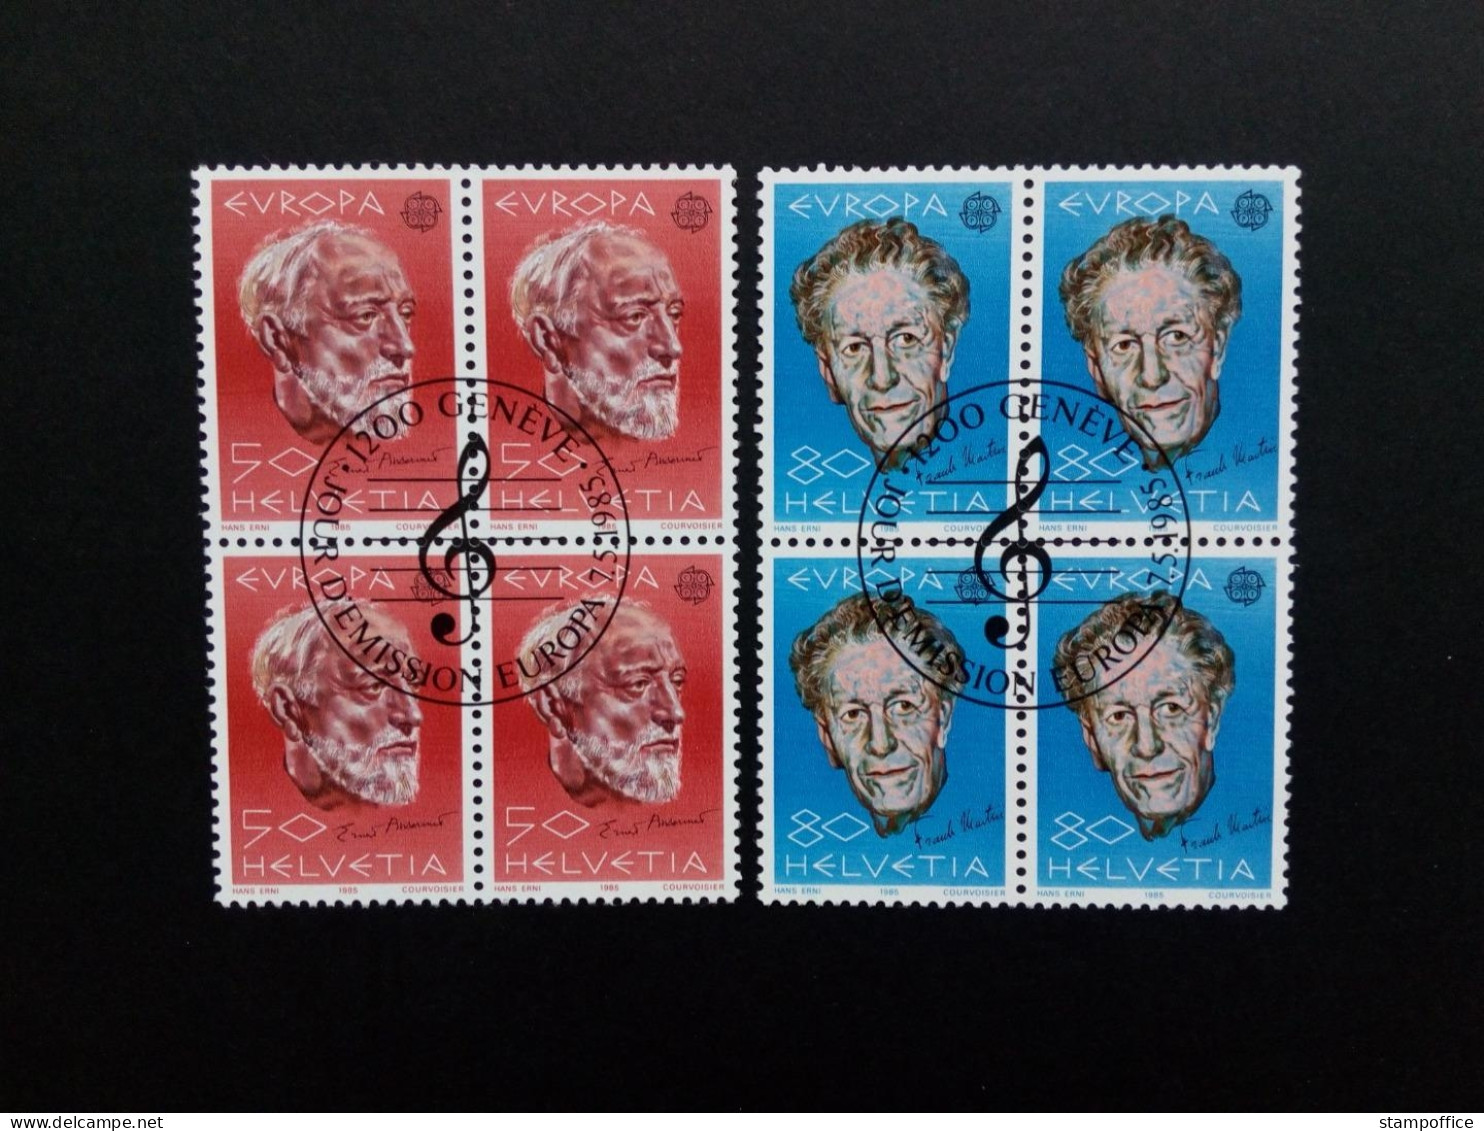 SCHWEIZ MI-NR. 1294-1295 GESTEMPELT(USED) 4er BLOCK EUROPA 1985 JAHR DER MUSIK - Used Stamps